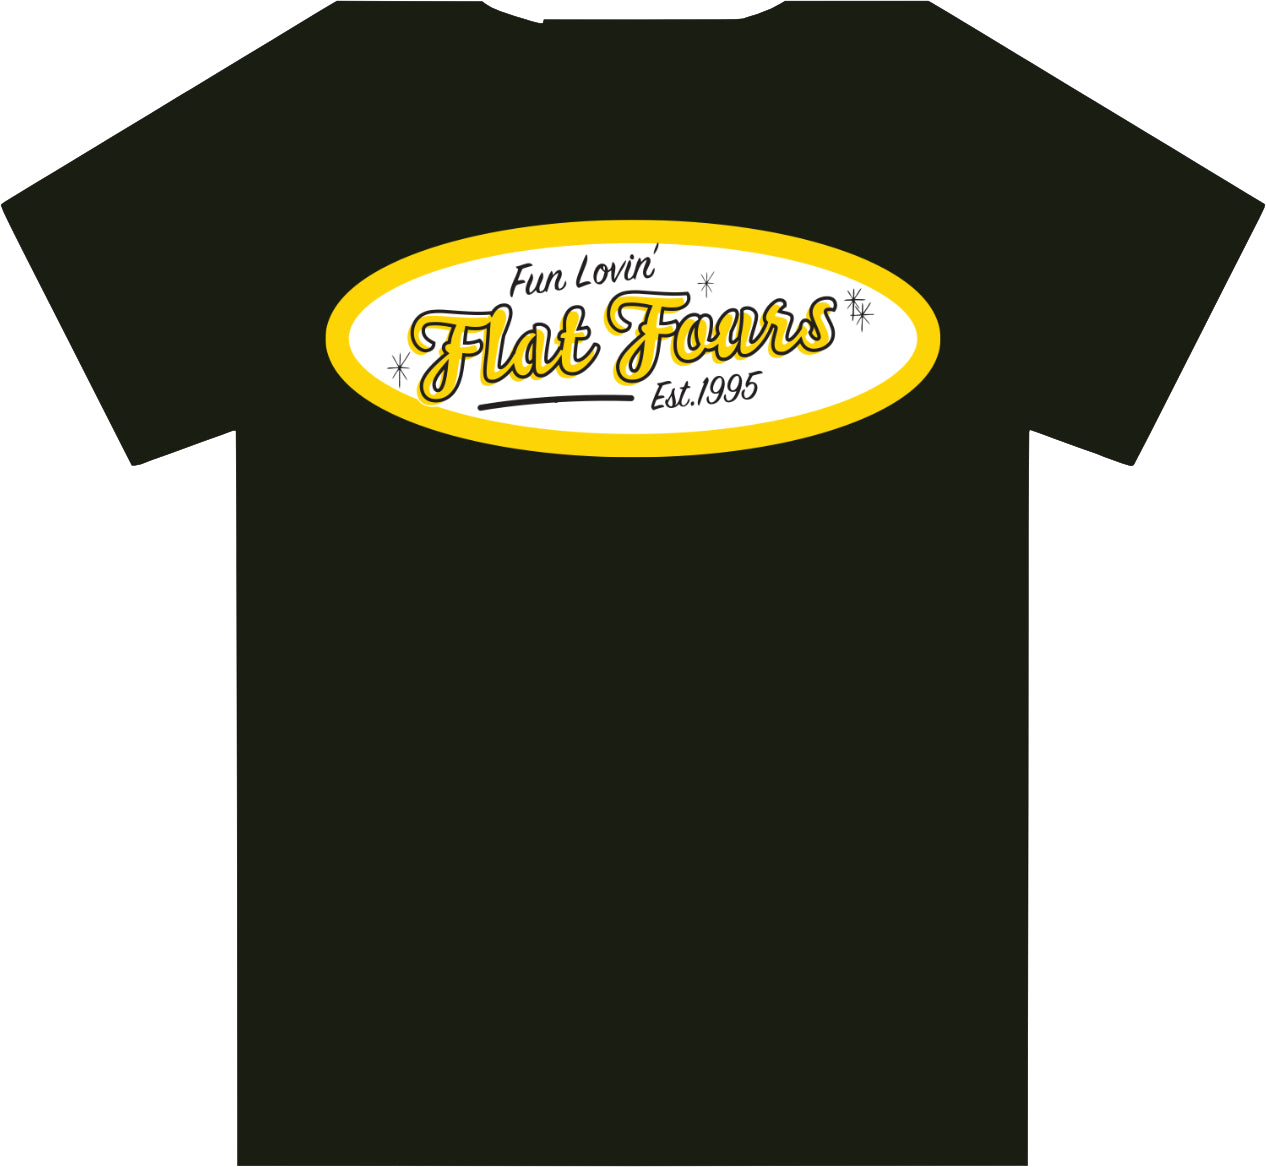 Gildan Hammer Heavyweight T-Shirt- Black - 1995 Design.